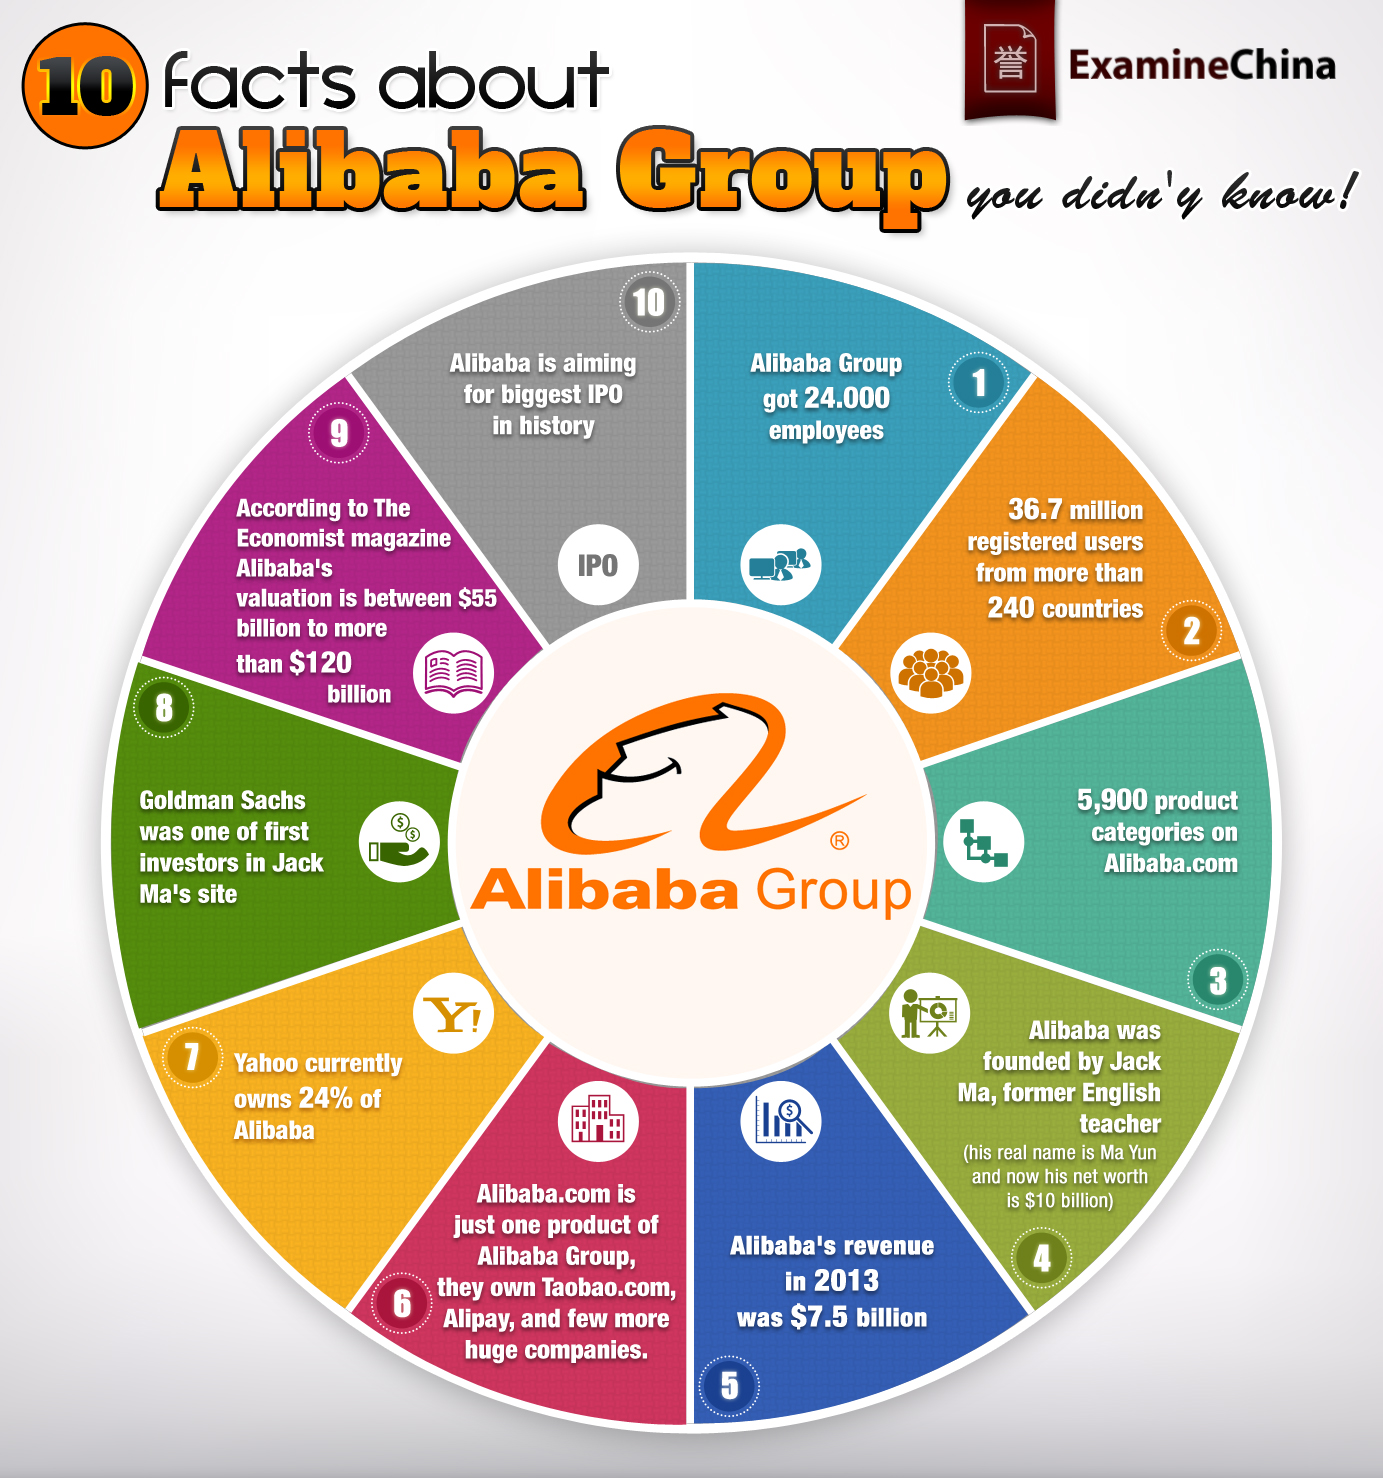 รายการ 100+ ภาพพื้นหลัง รูปภาพหลักของ Alibaba.com พื้นหลังต้องเป็นสีใด ...